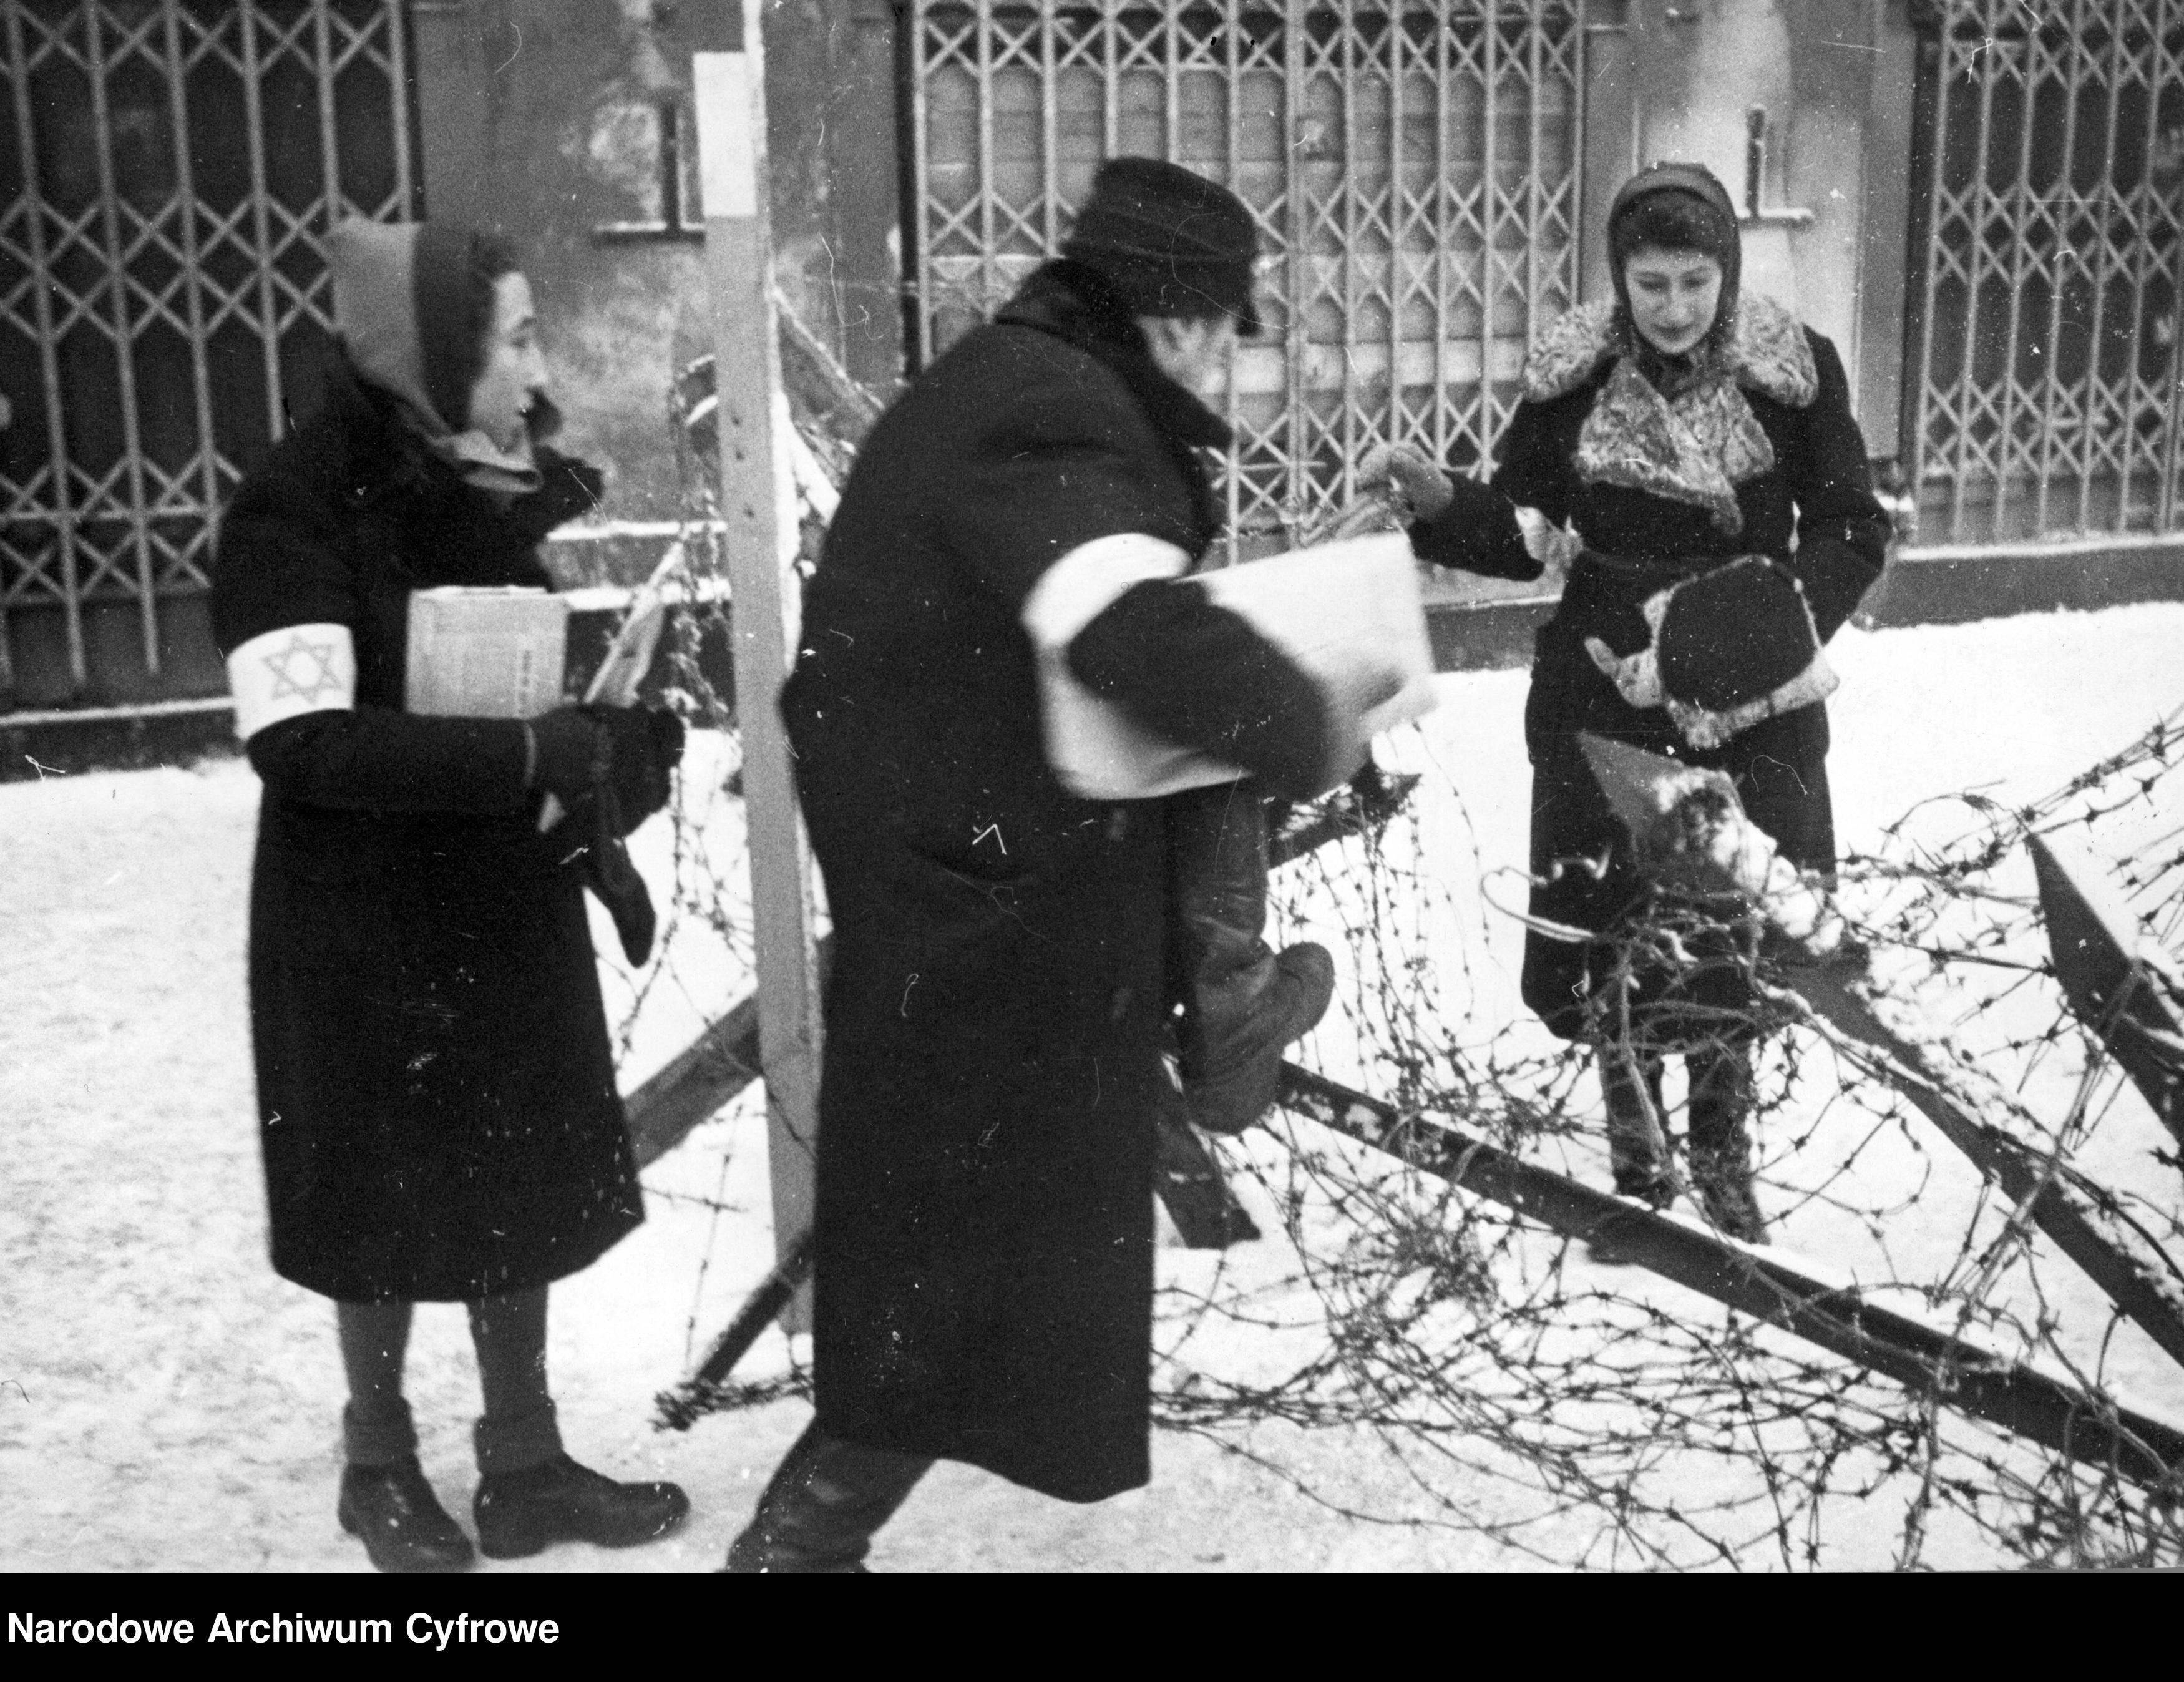 Żydzi w getcie warszawskim przechodzący przez płot z drutu kolczastego.